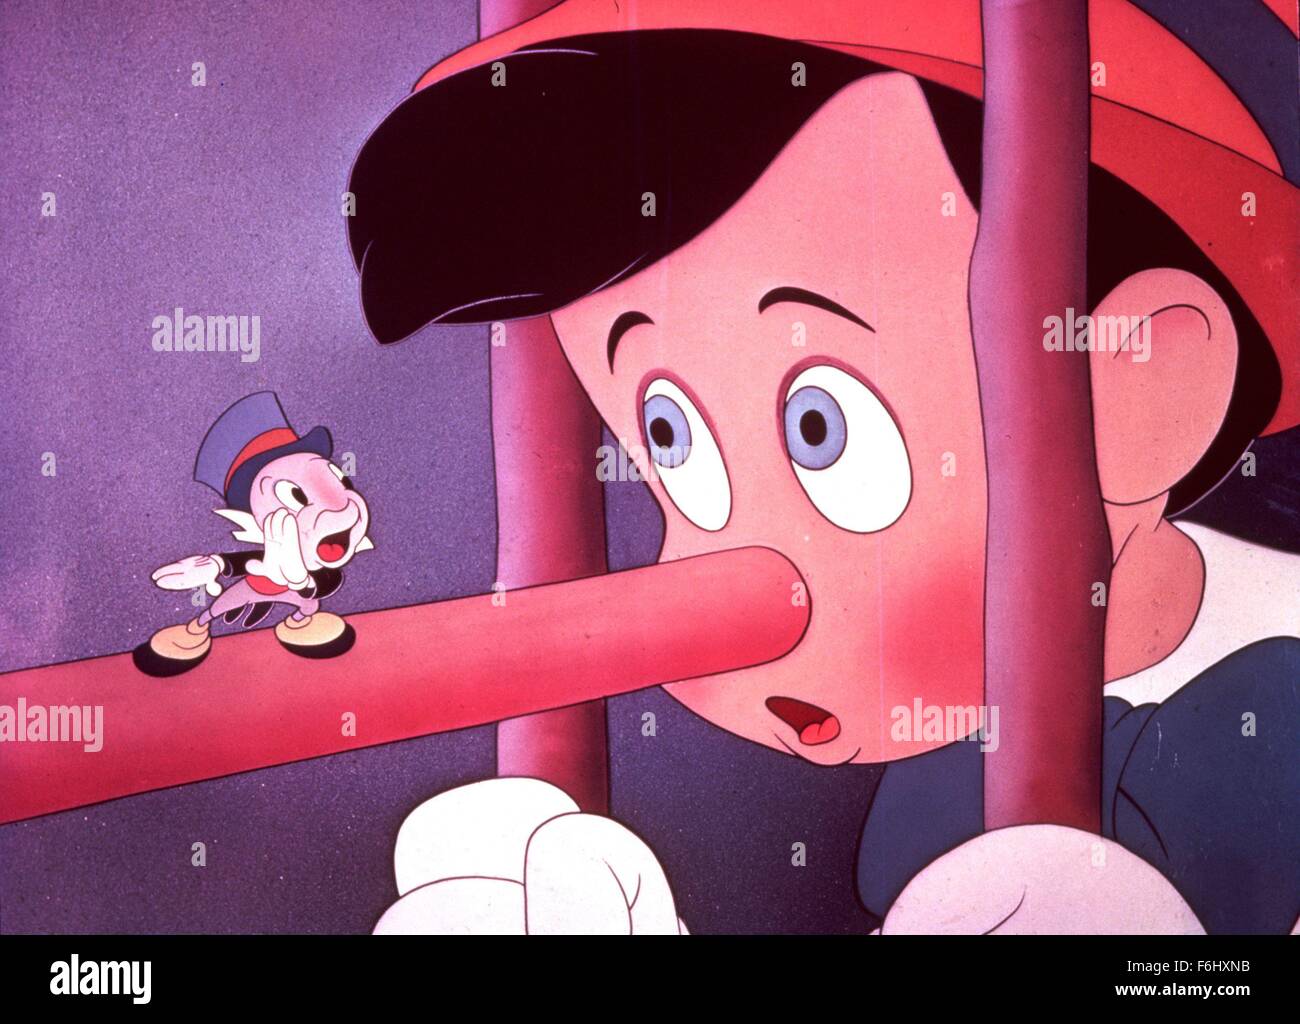 1992, le titre du film : Pinocchio, Studio : WALT DISNEY, présenté : Jiminy Cricket. (Crédit Image : SNAP) Banque D'Images